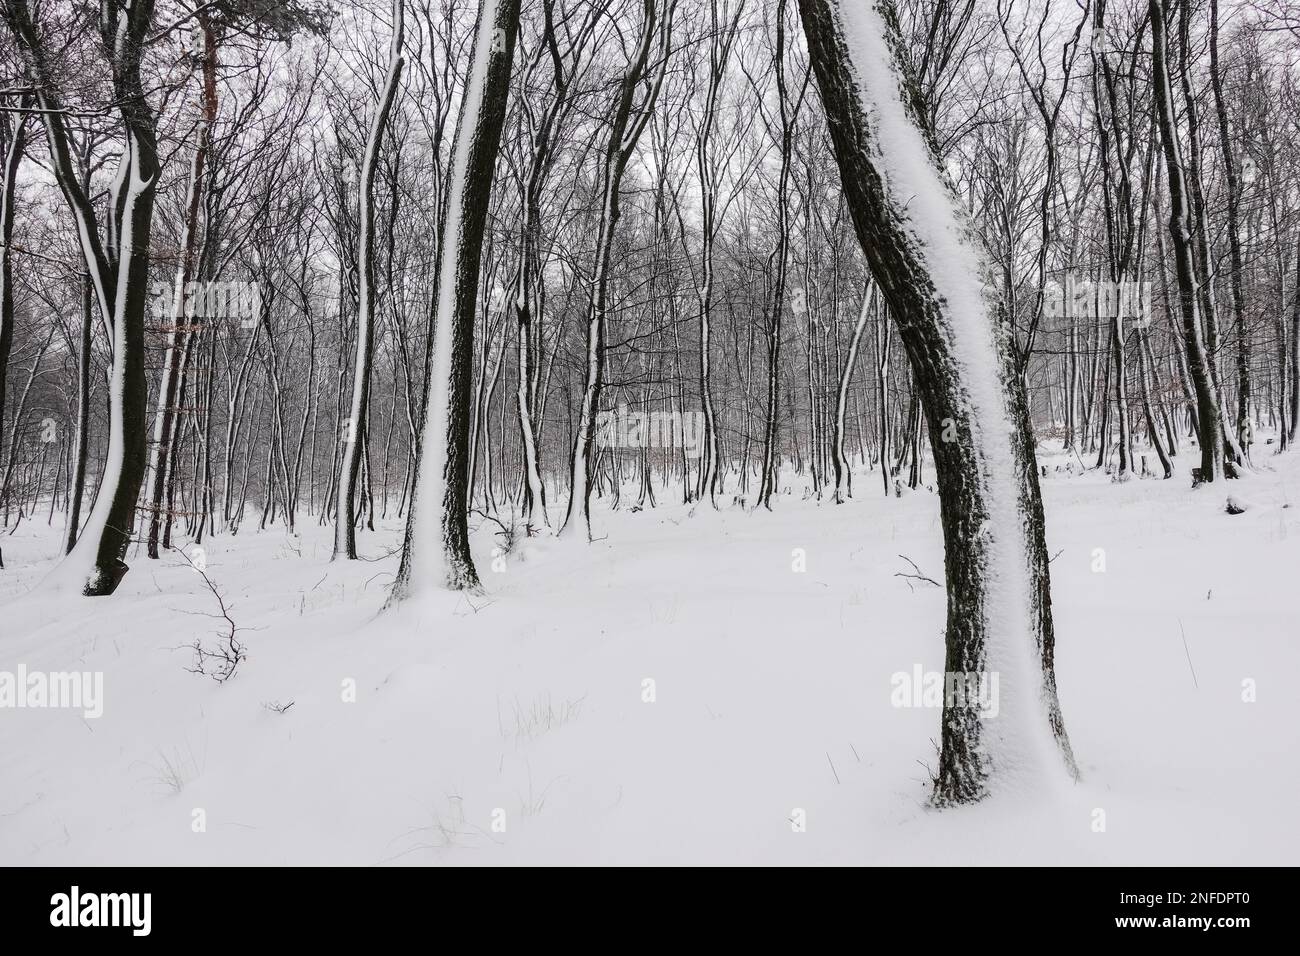 forêt incroyable avec beaucoup de neige sur les troncs d'arbre comme peint dans la nature Banque D'Images